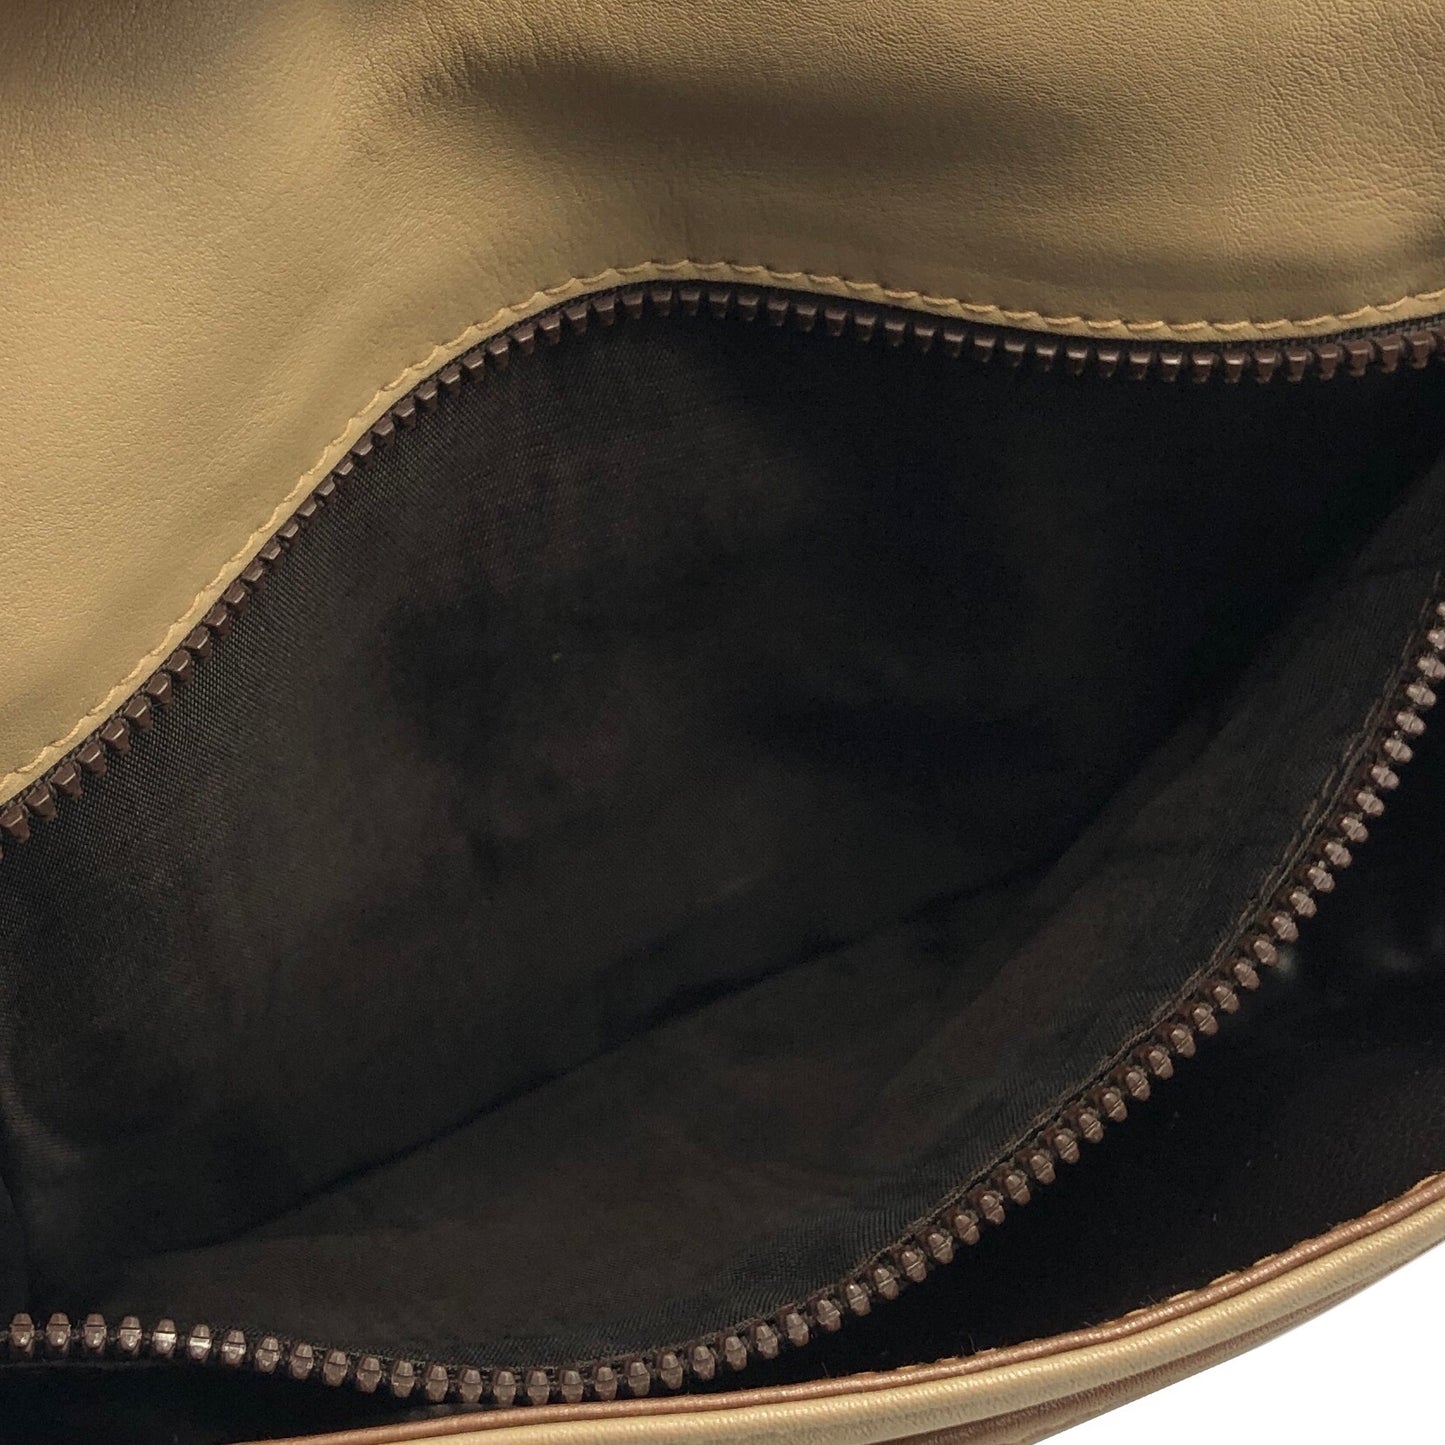 CELINE Triomphe Brown Piping Flap Leather Crossbody Shoulder bag Beige Vintage i8vt8s